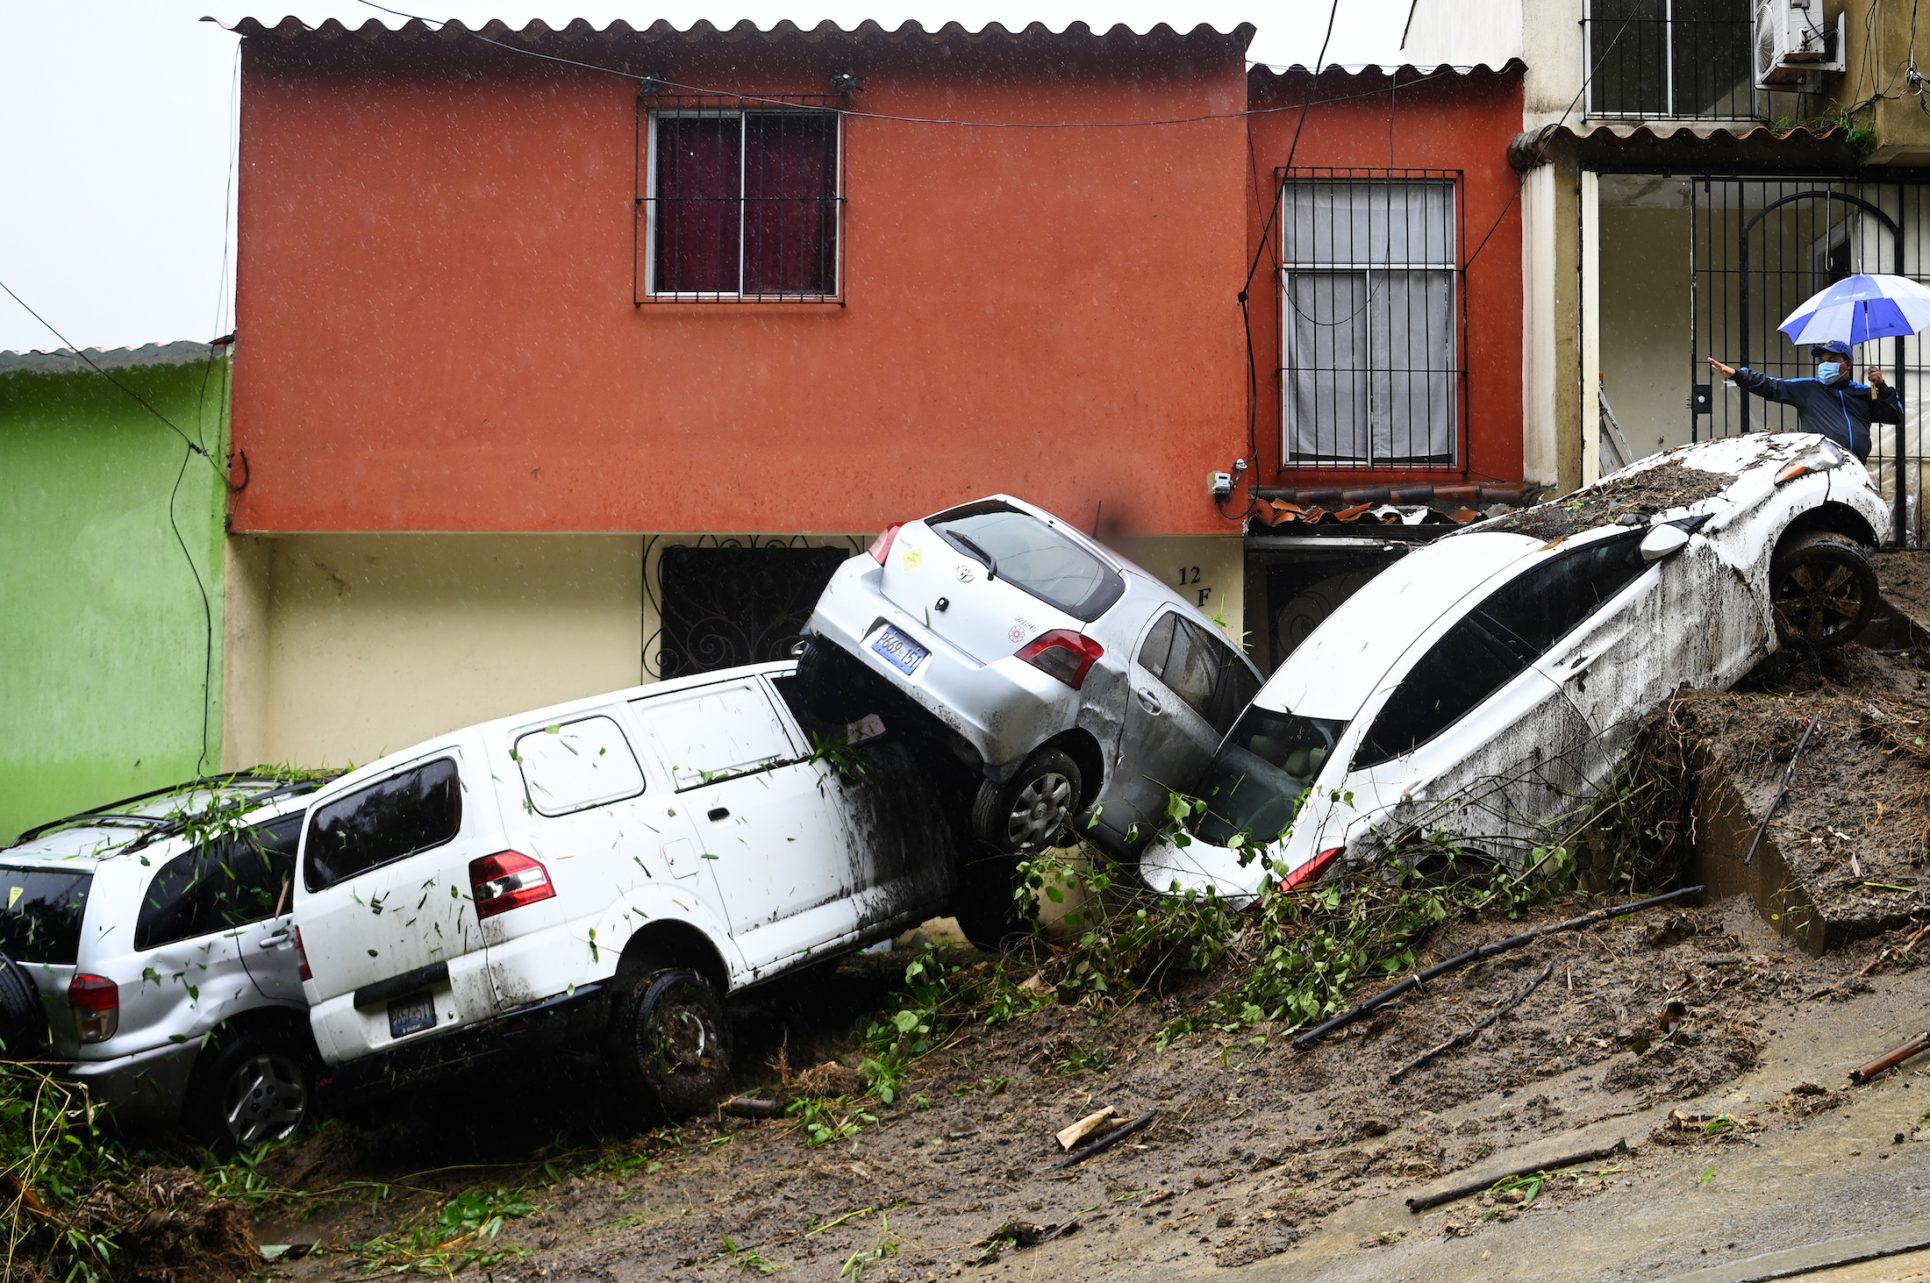 Lluvias torrenciales dejan muerte y destrucción en El Salvador;  7 miembros de una familia murieron soterrados